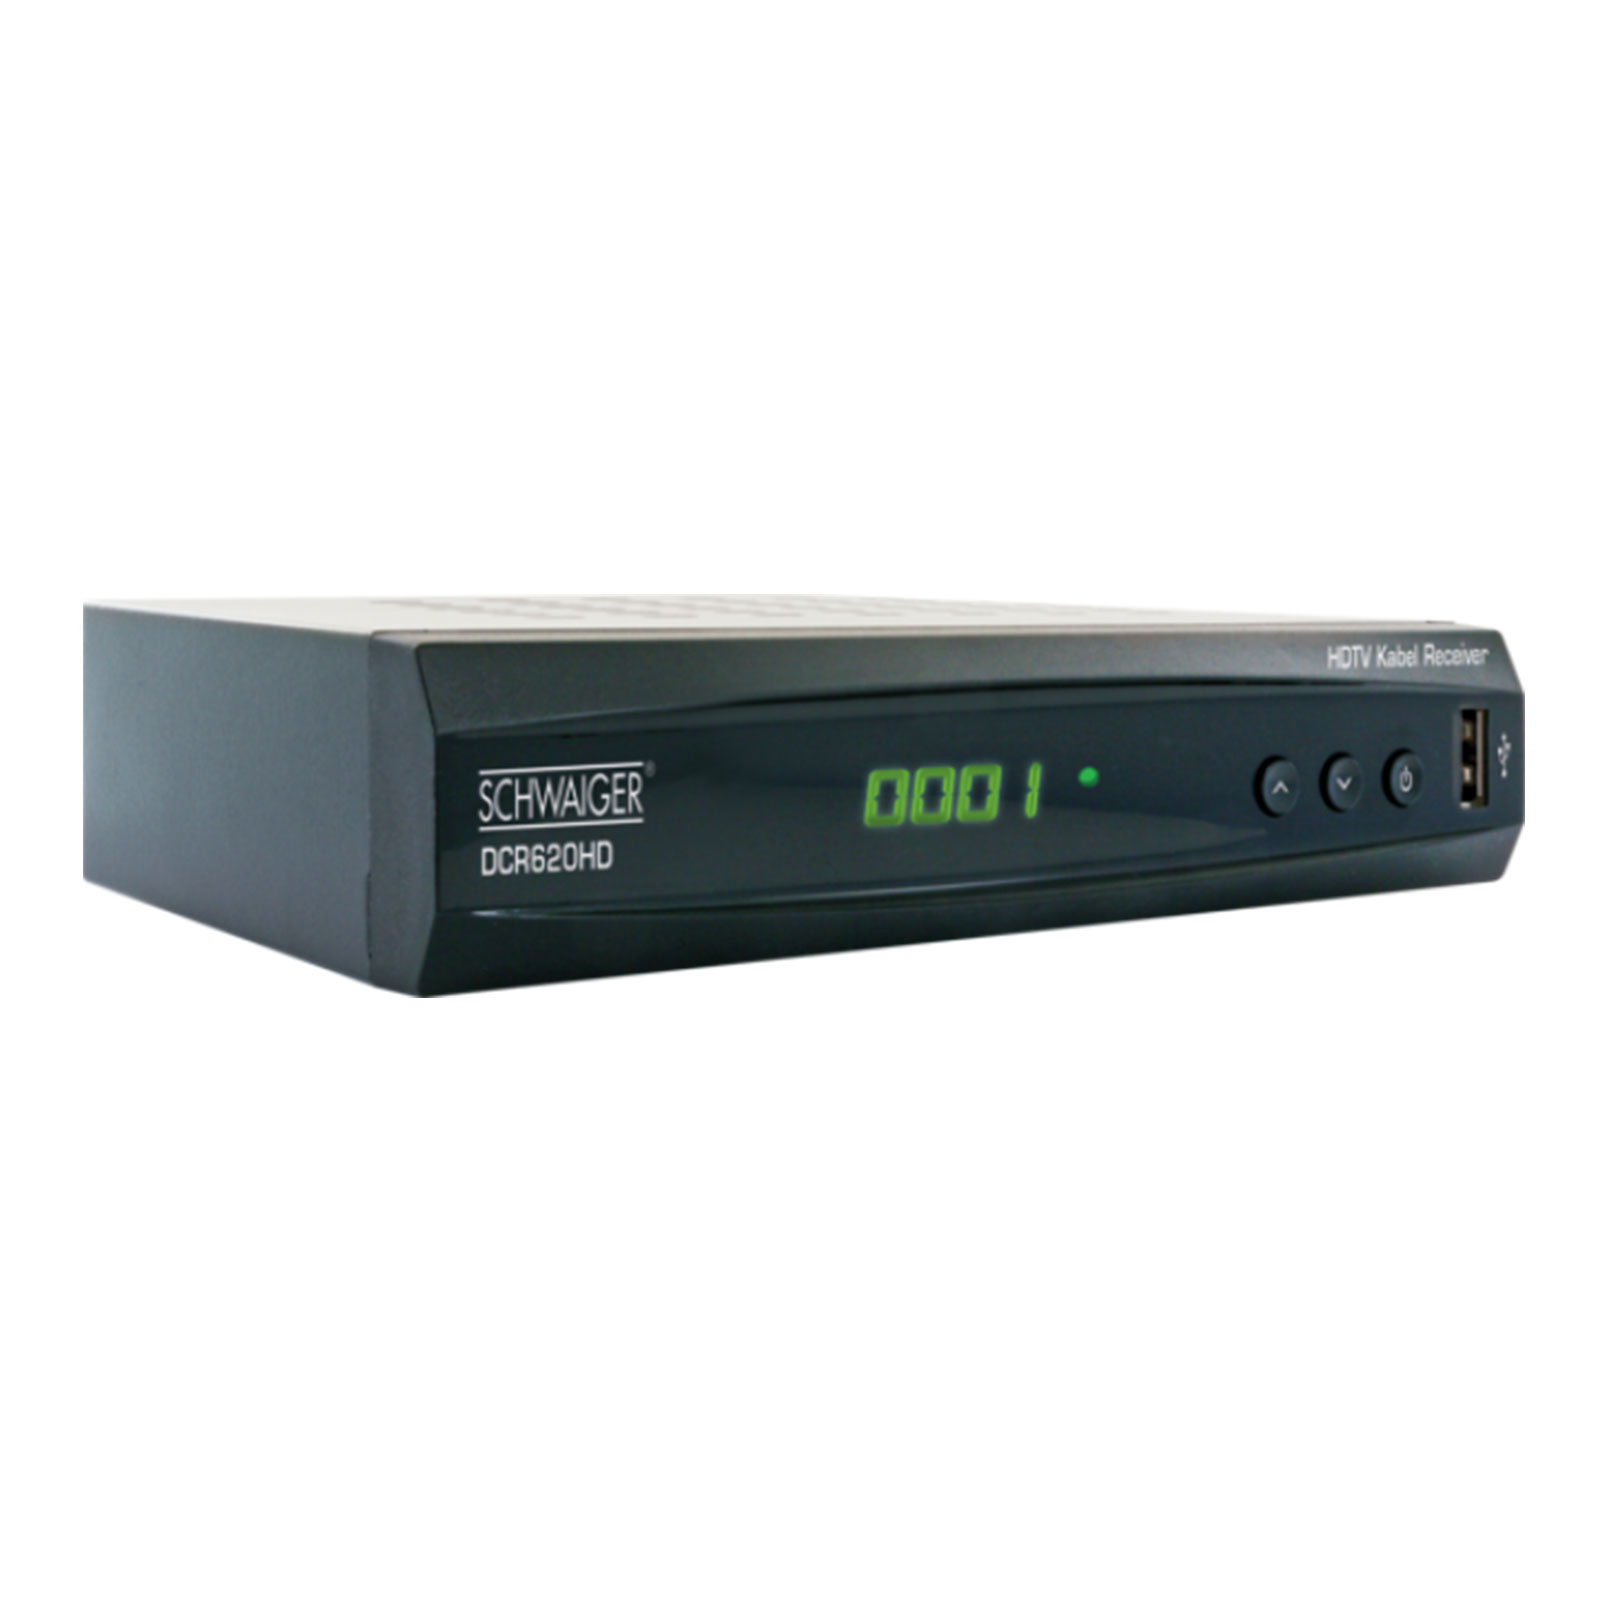 Schwaiger DCR620HD Full HD Kabelreceiver